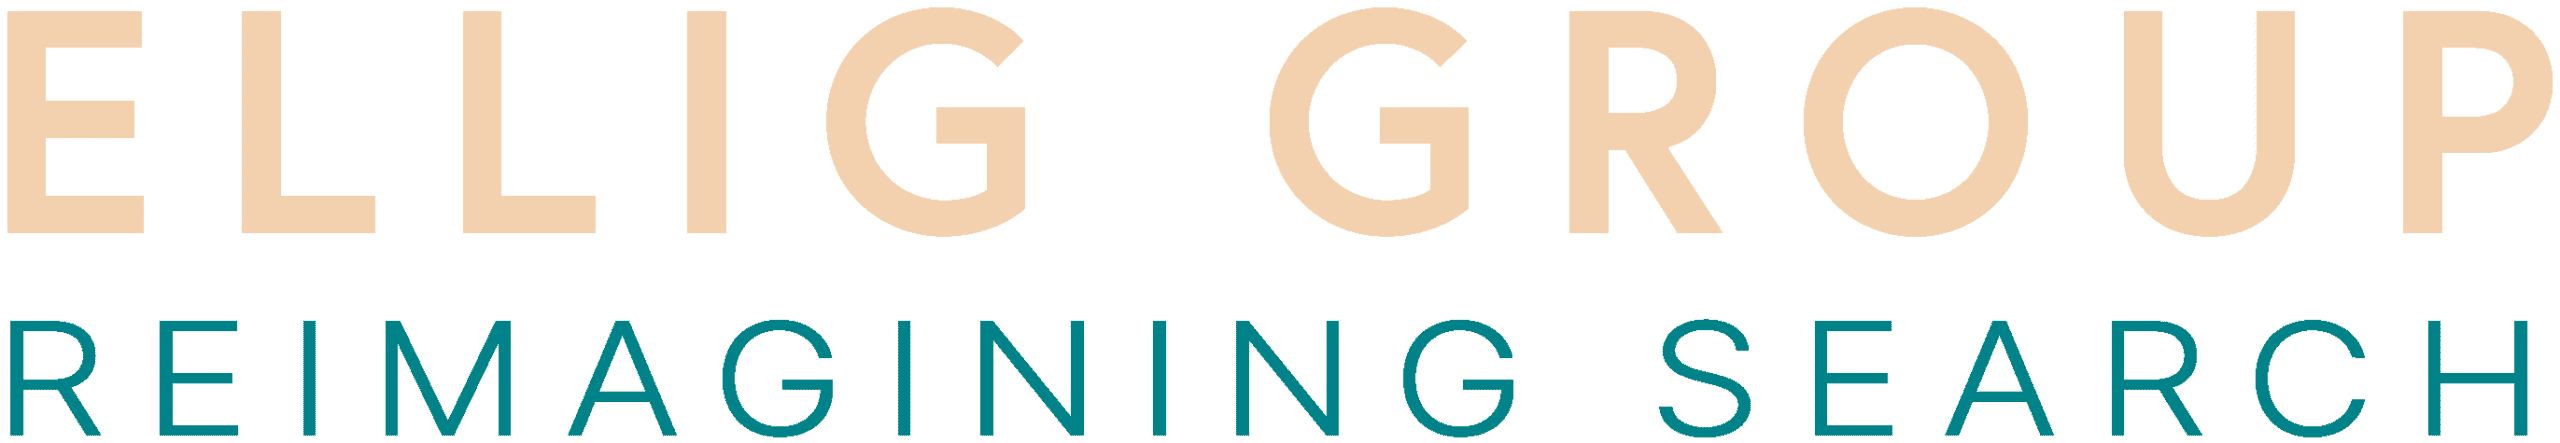 Ellig-Group-Logo-recolor